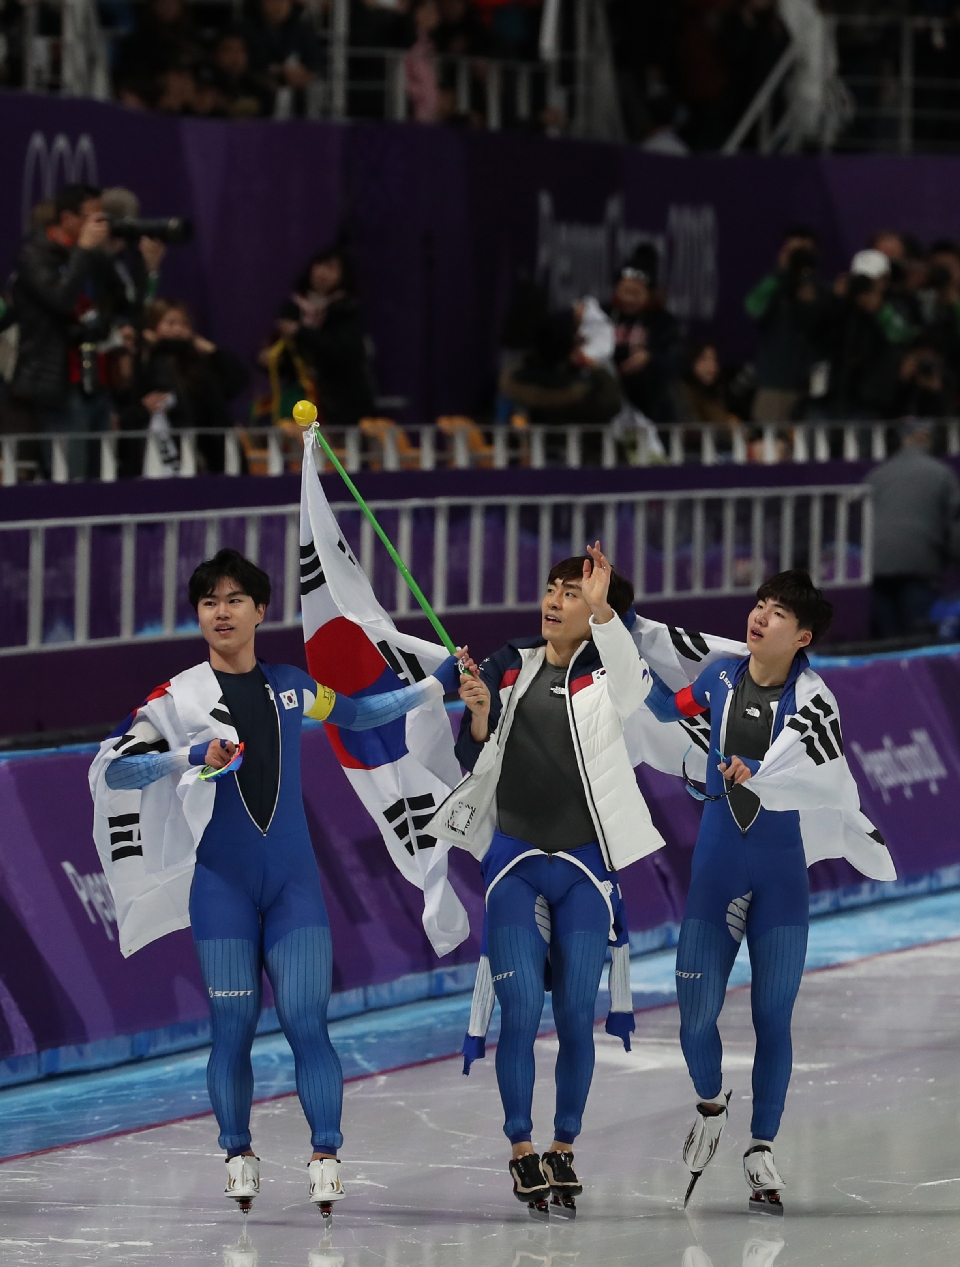 스피드스케이팅 남자 팀추월 결승 경기, 한국 선수 은메달